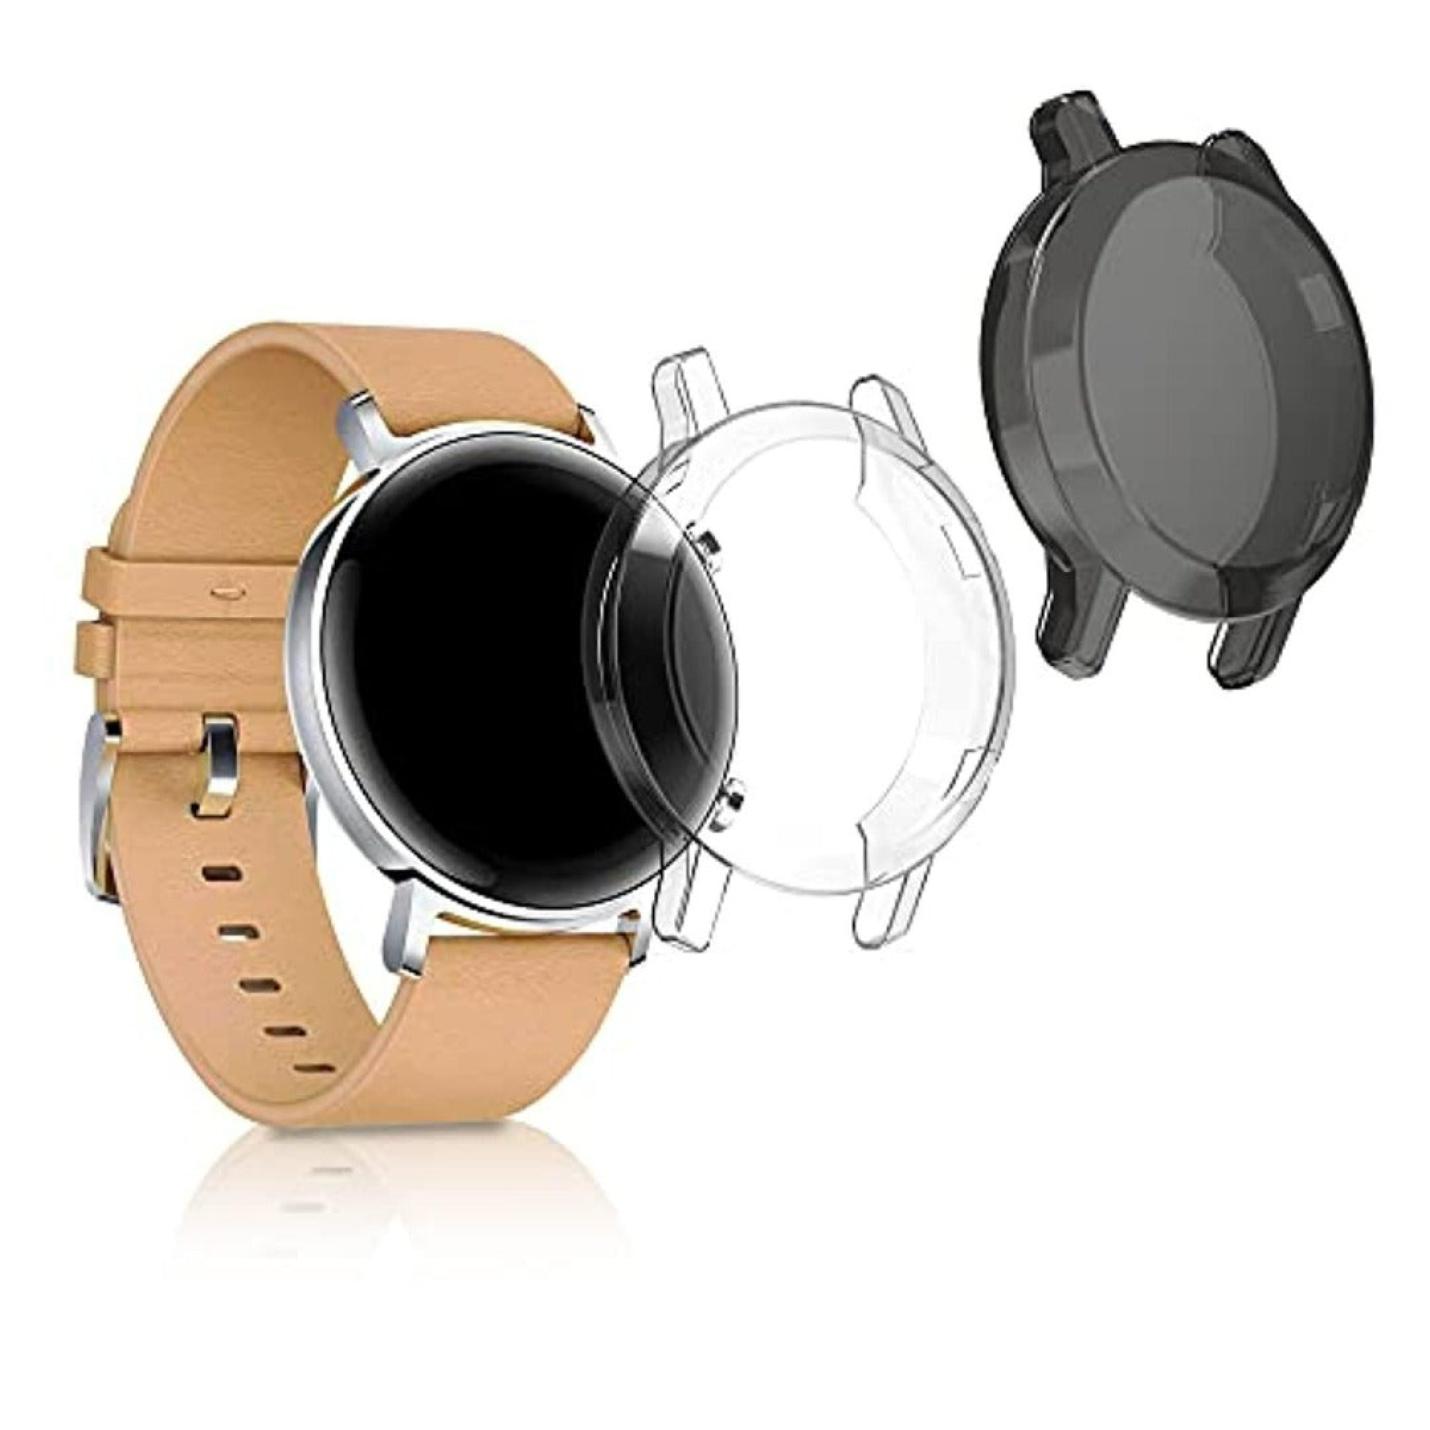 Zwart en transparante smartwatch covers voor stijlvolle bescherming